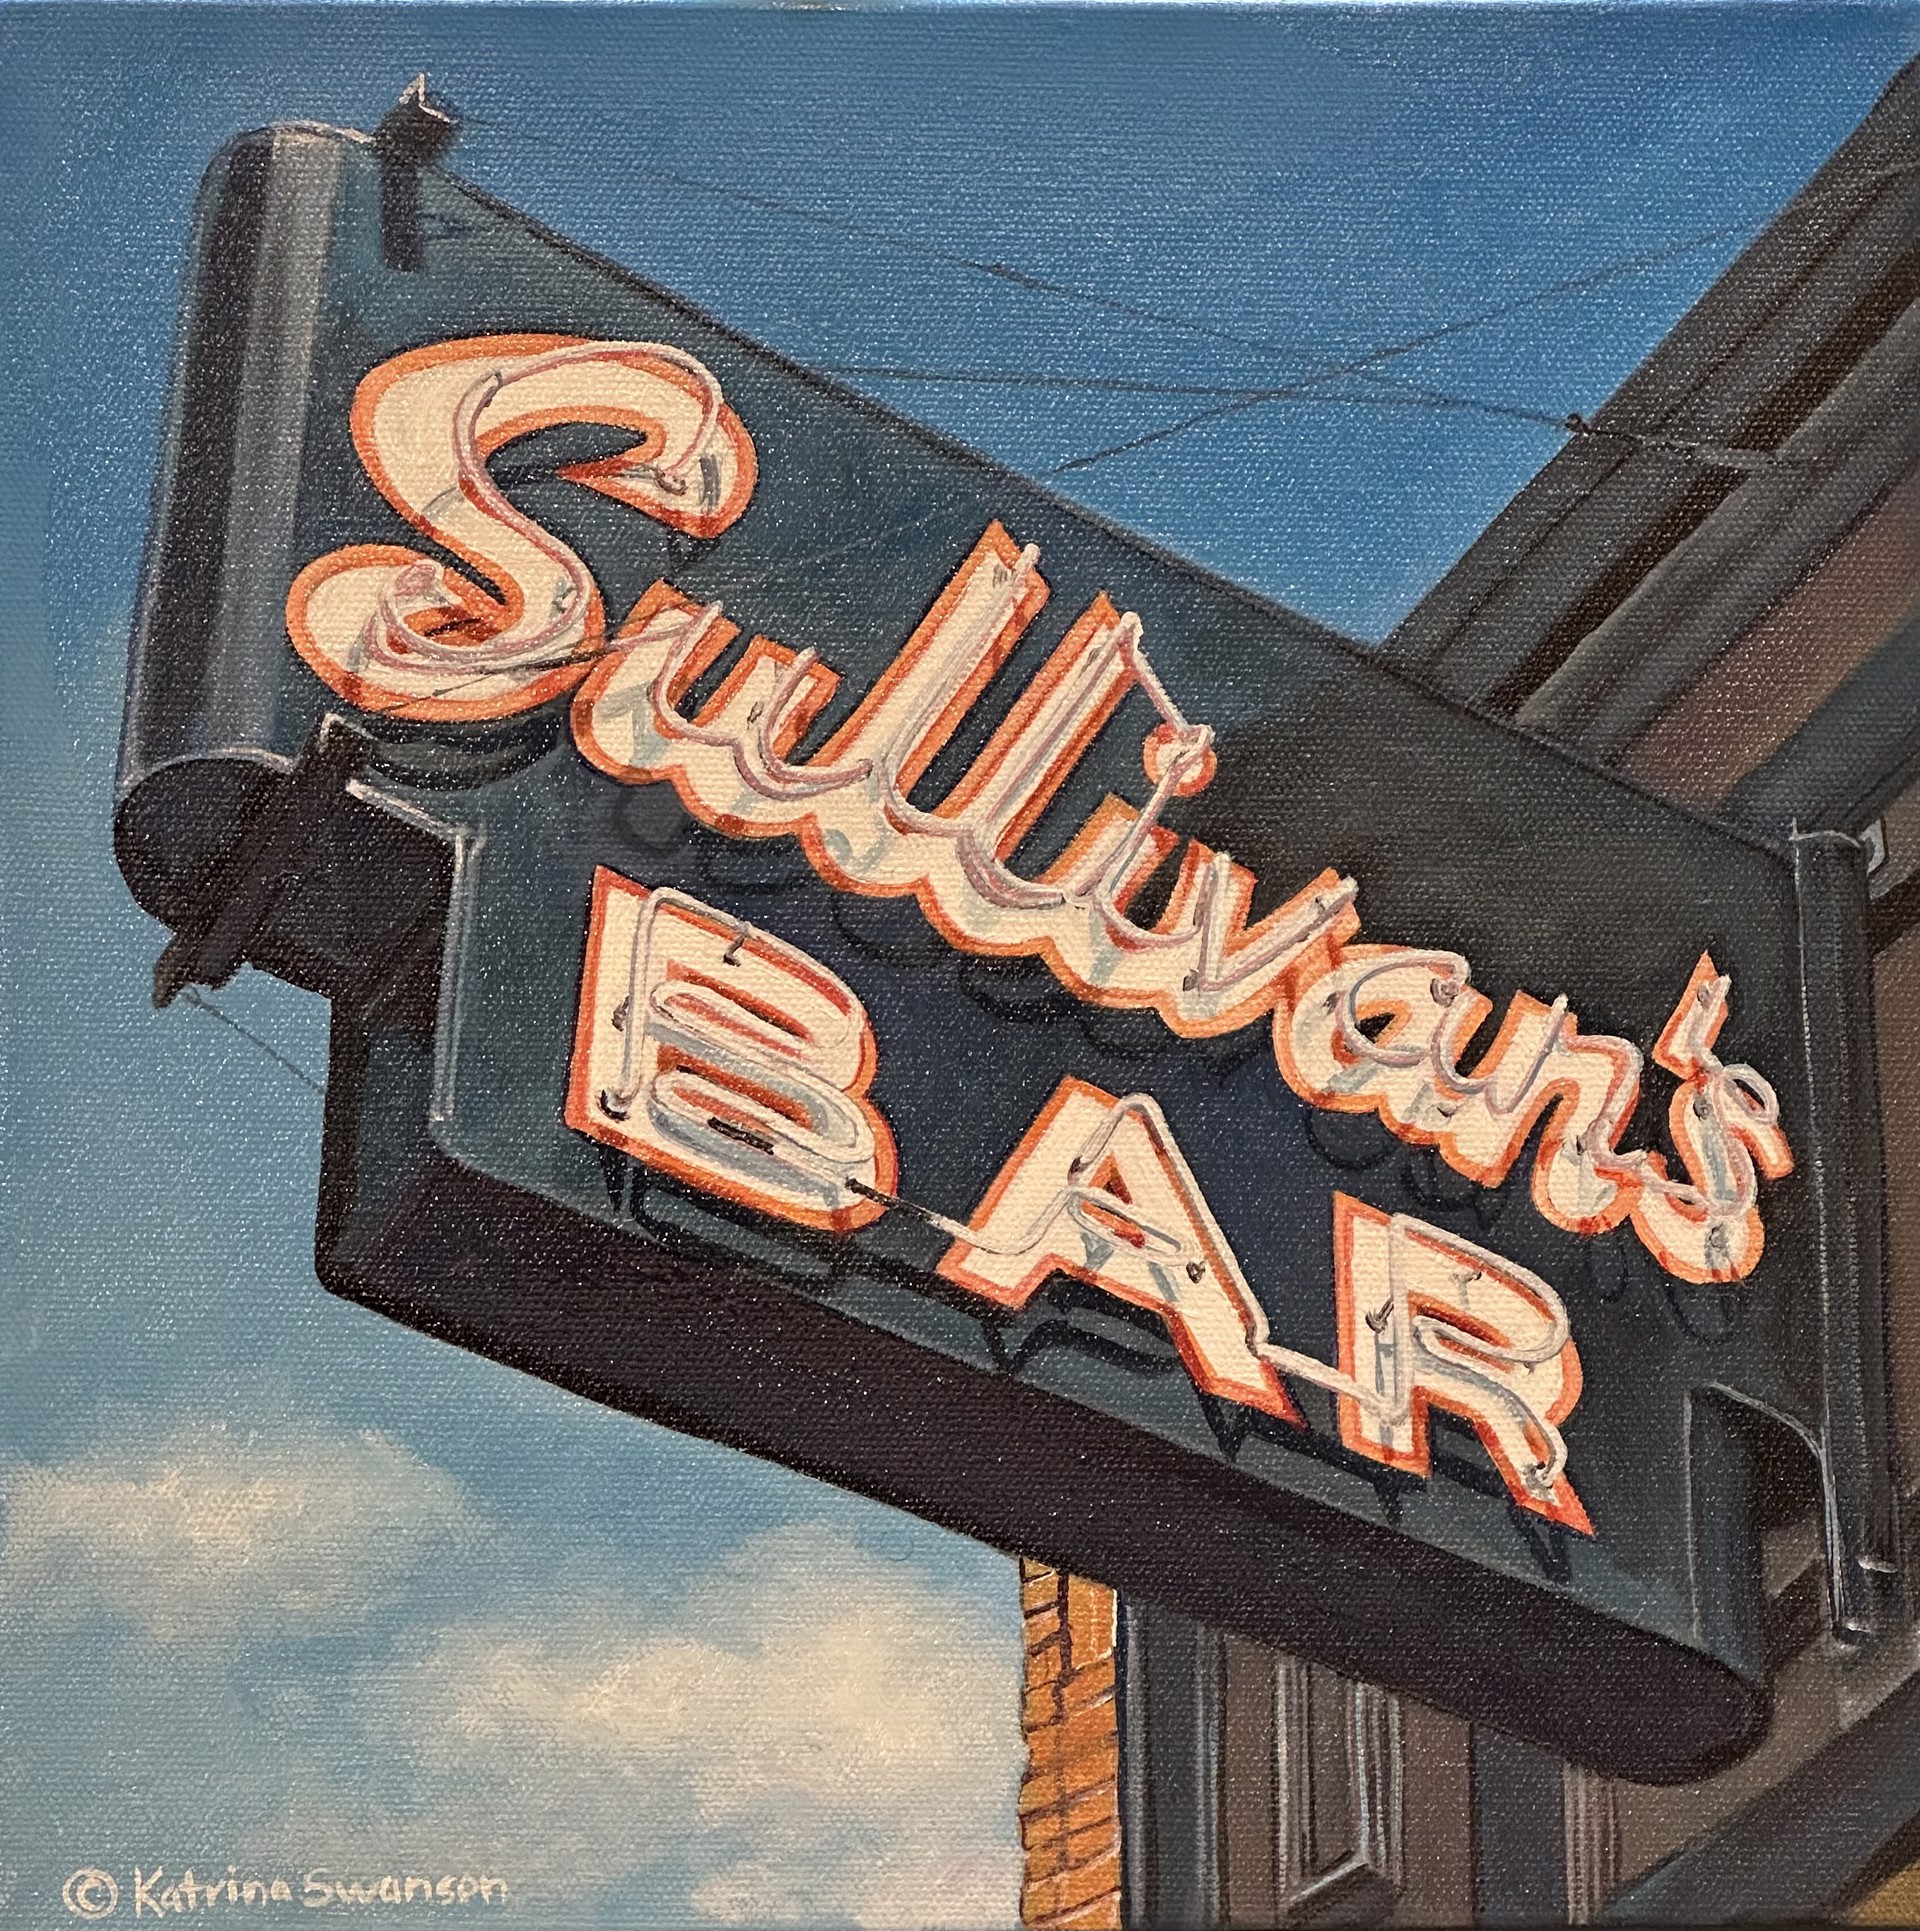 Sullivan's Bar by Katrina Swanson